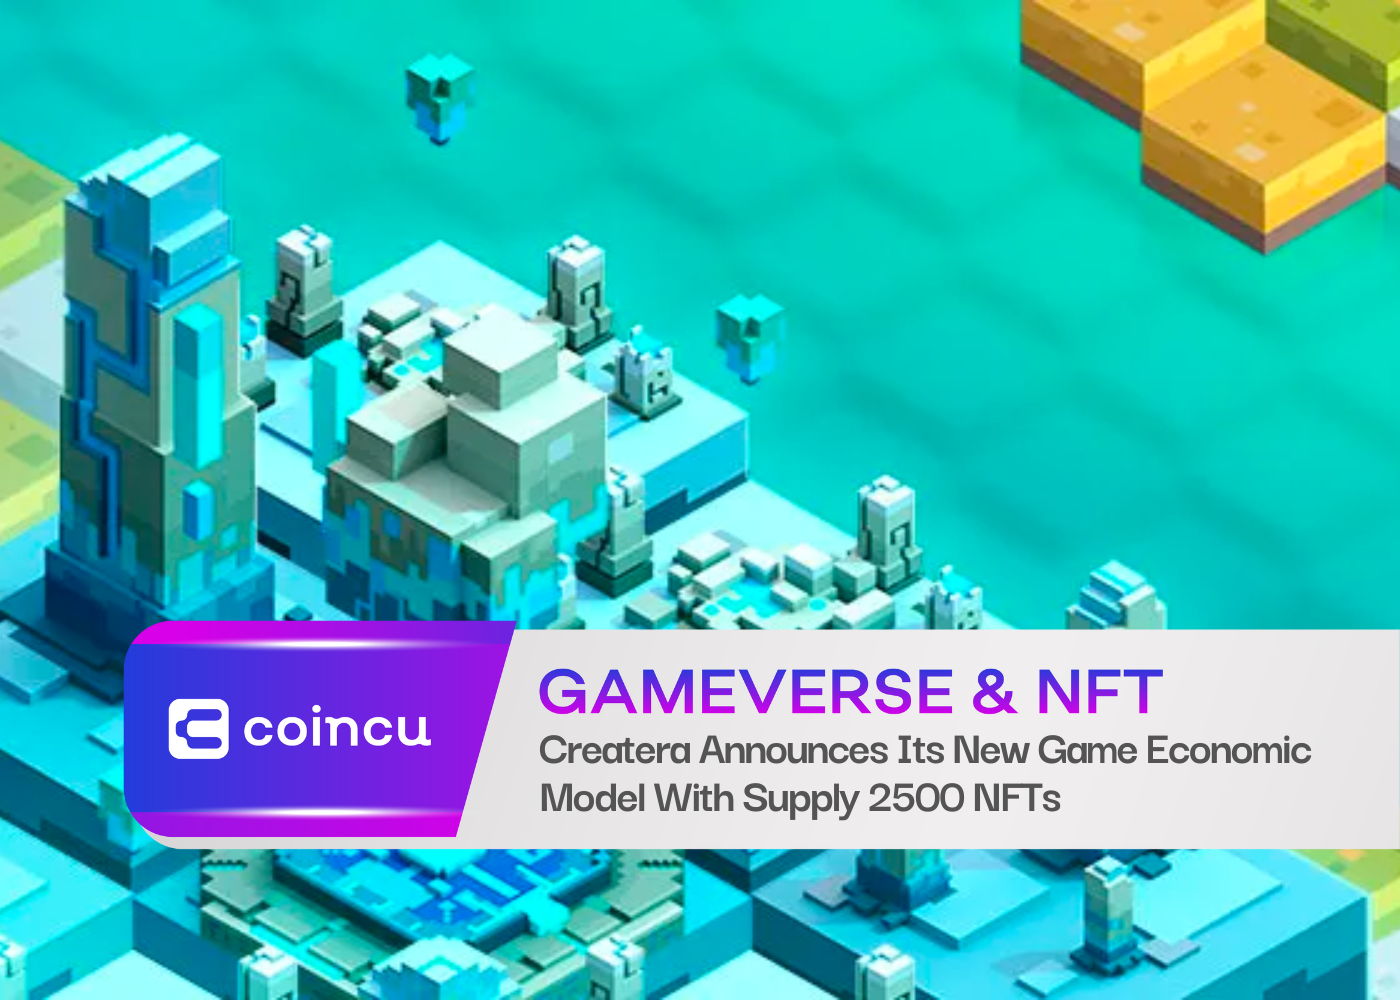 Createra anuncia su nuevo modelo económico de juegos con suministro de 2500 NFT